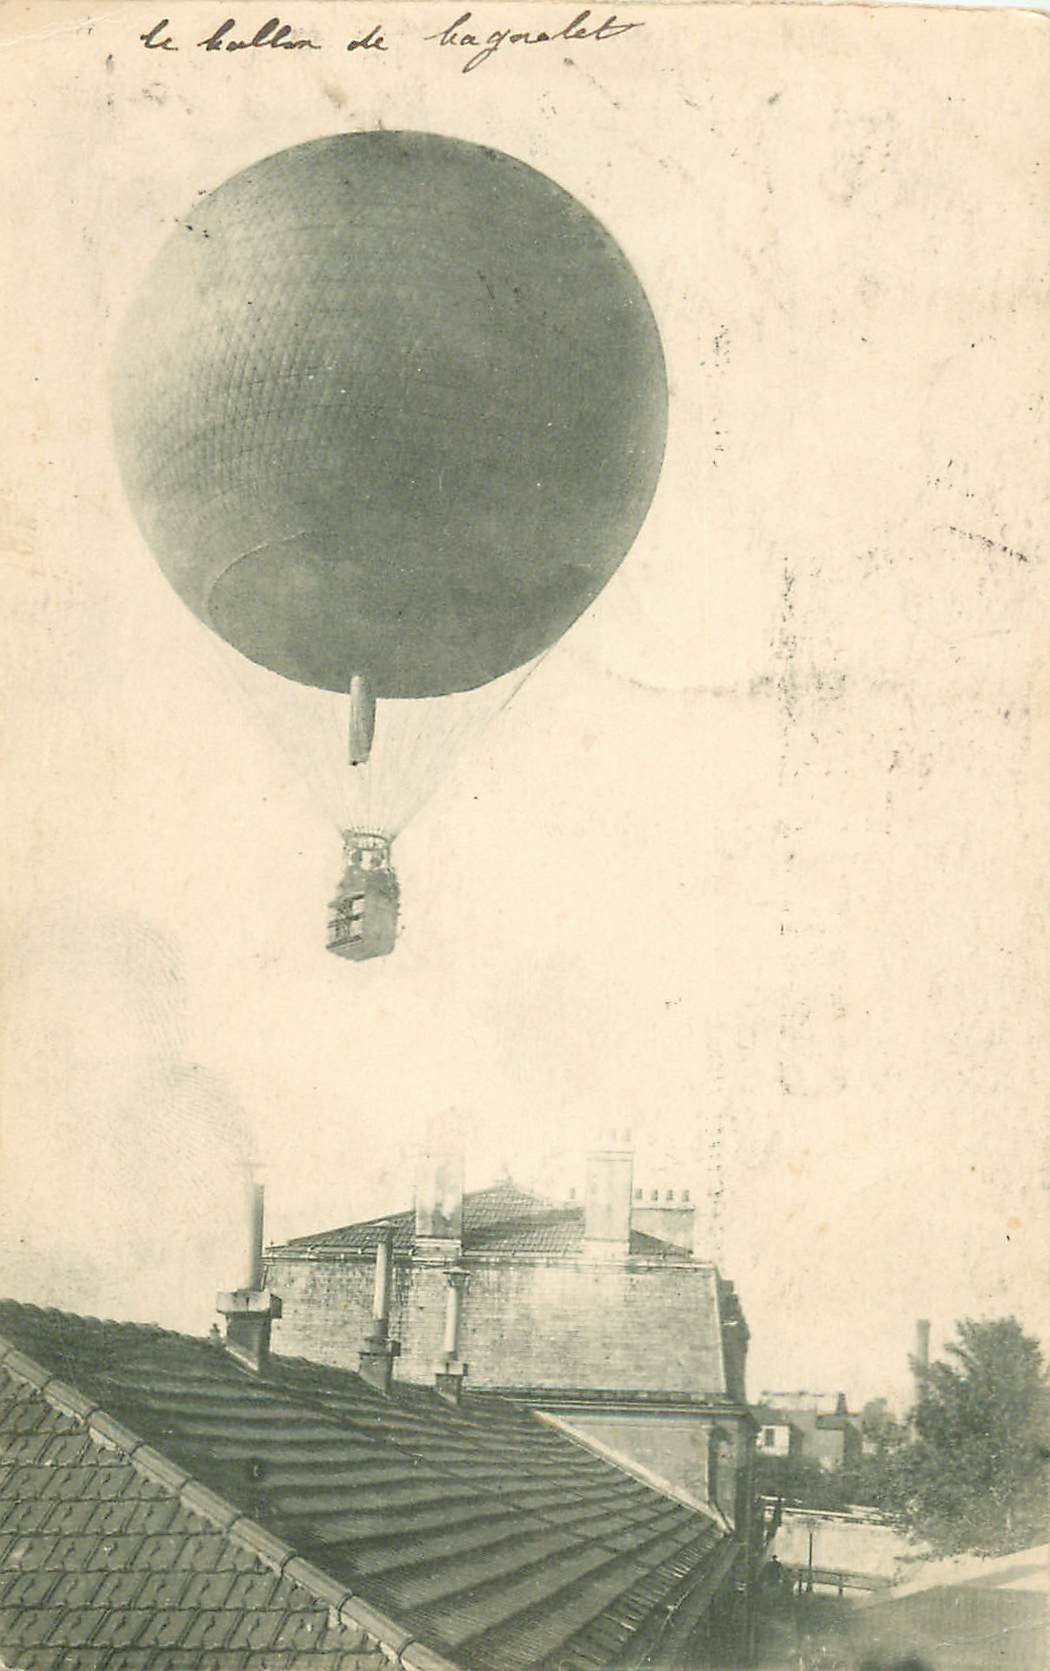 93 BAGNOLET. Le Ballon survolant la Mairie 1909. Mongolfière Aéroplane Transports